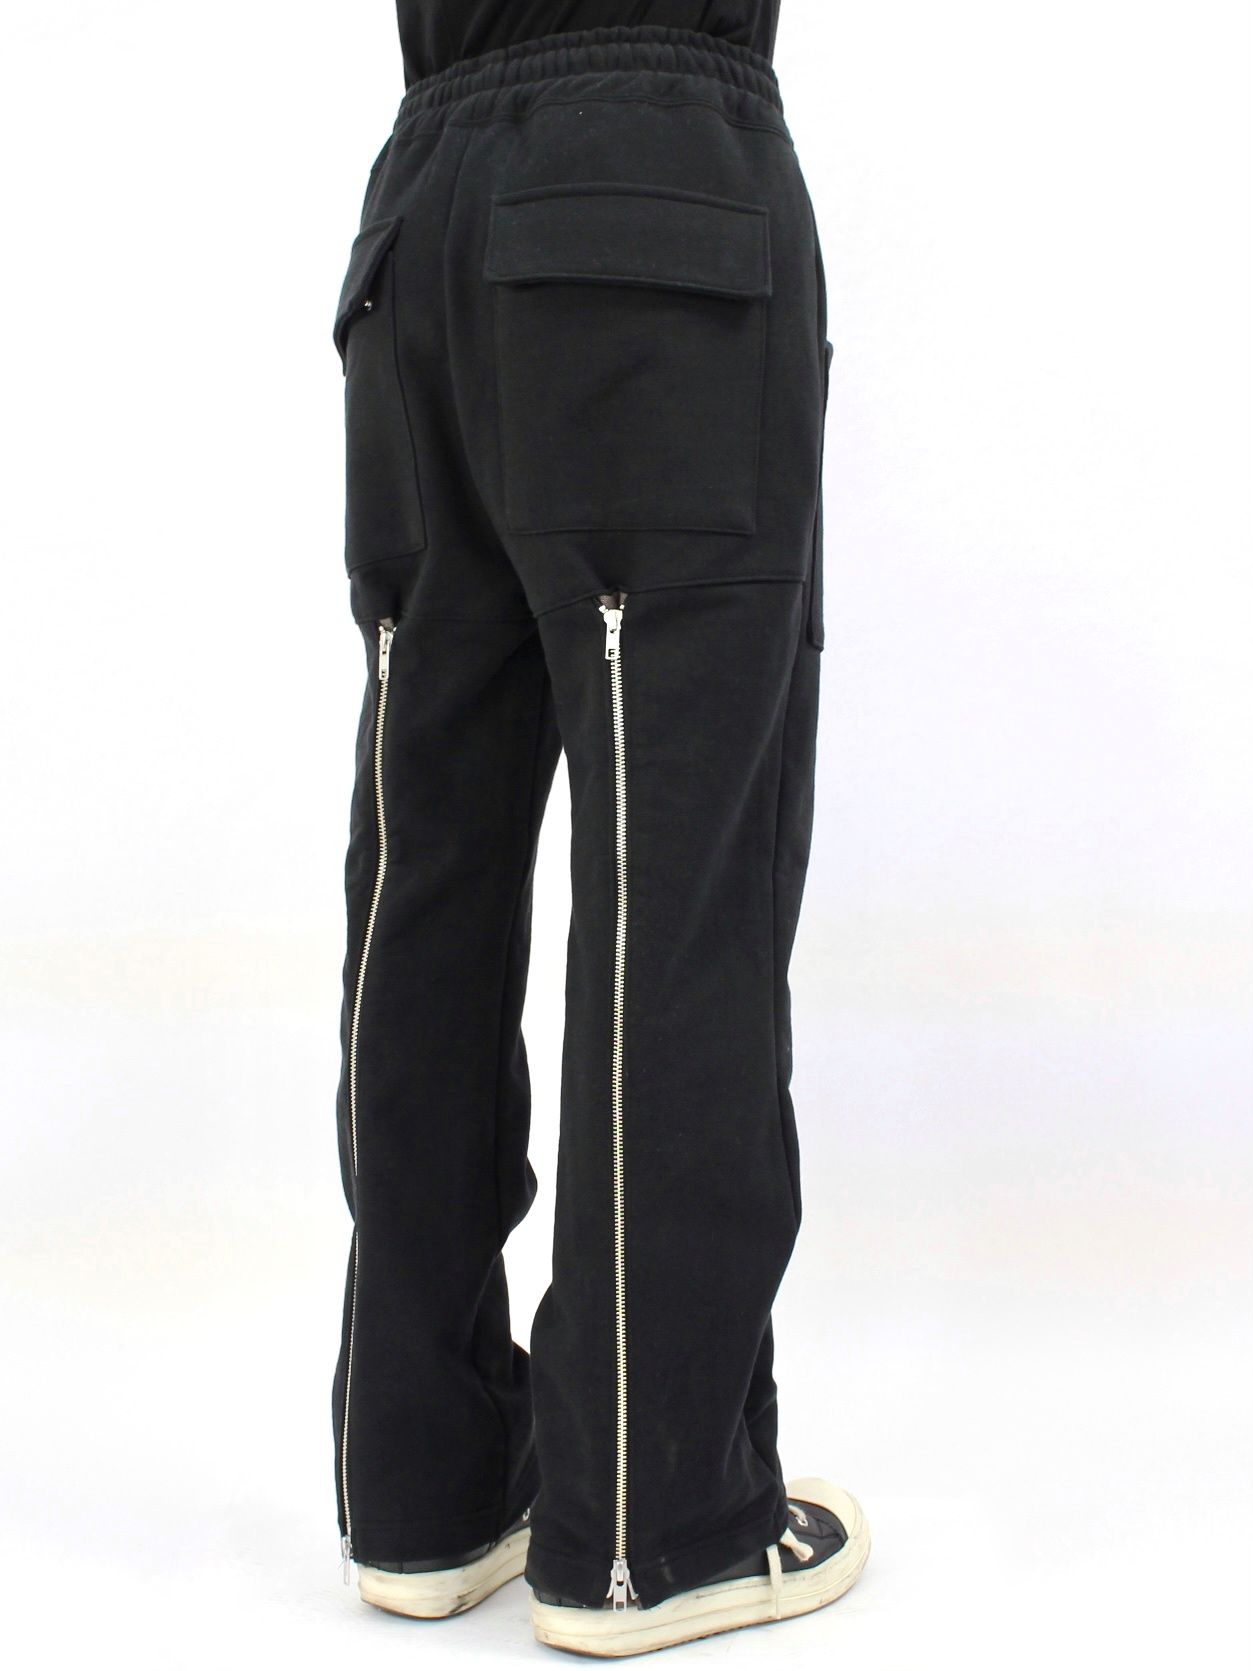 LAid Back レイドバック 日本製 Back Zip Sweat Pants バックジップスウェットパンツ 1(M) グレー ボトムス【LAid Back】